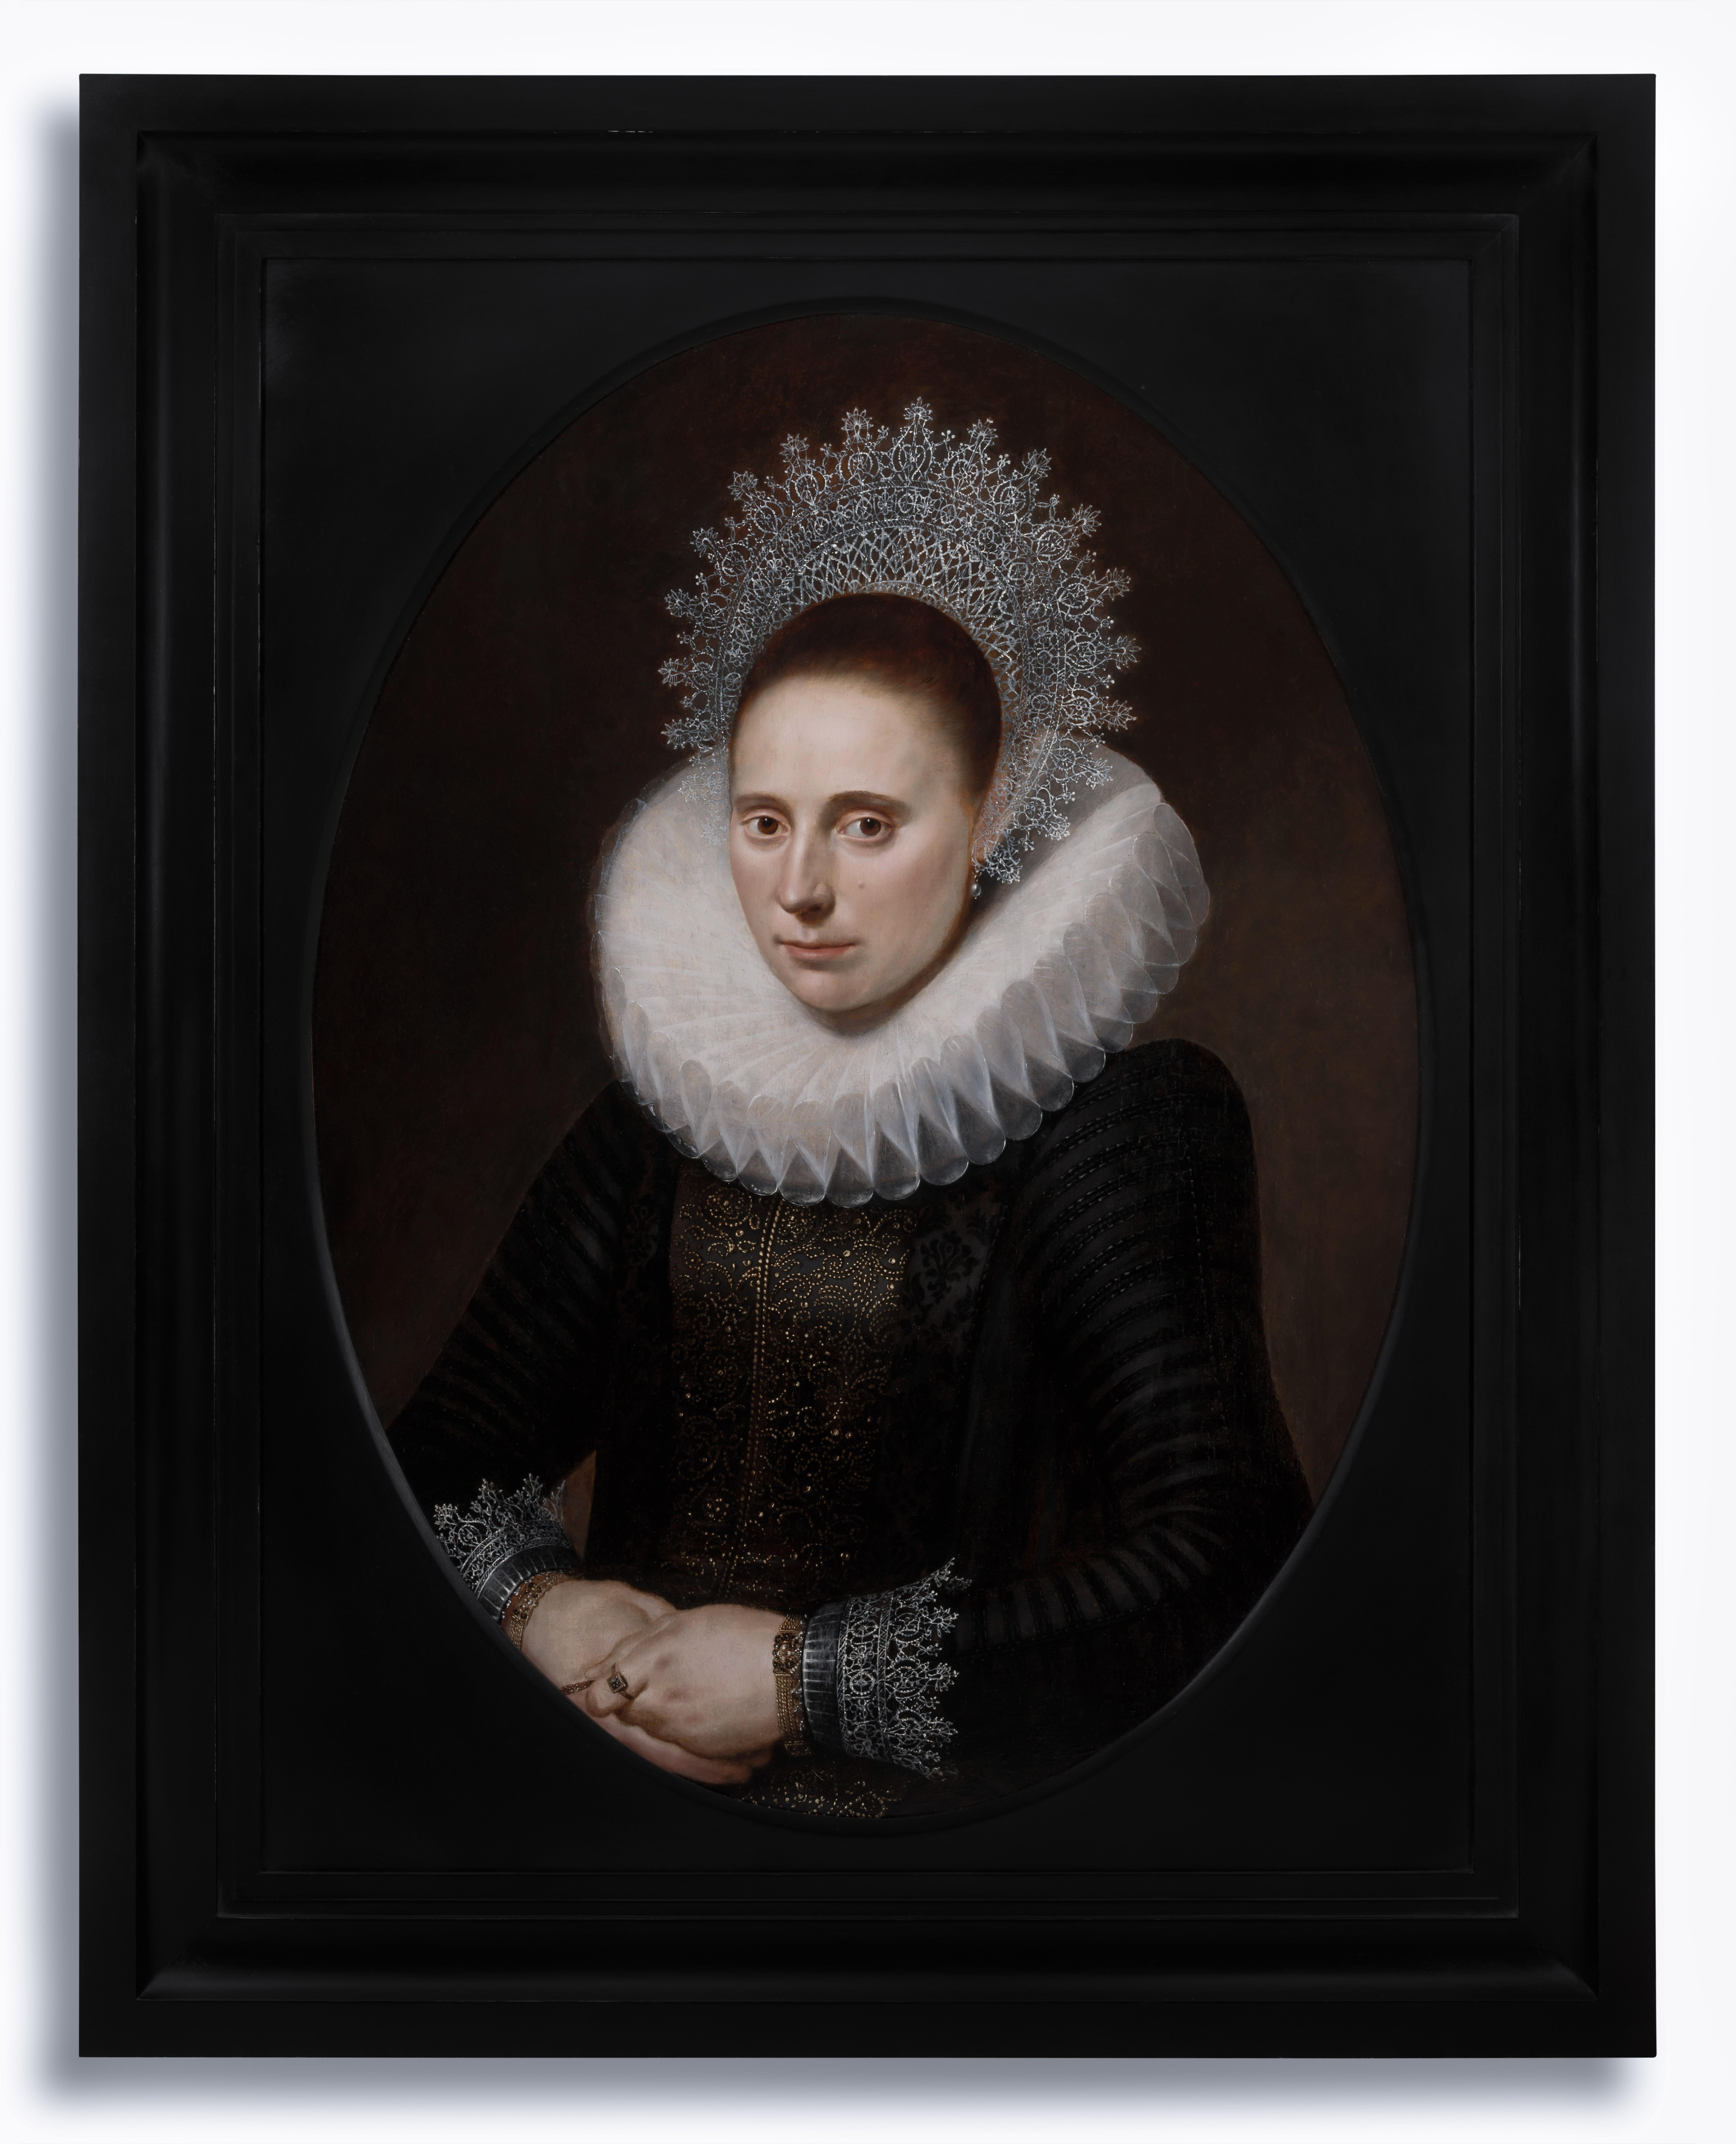 Cornelius van der Voort Portrait Painting – Porträt einer Dame in einem aufwändigen Rüschen- und Spitzenadelkopf von 1610-20, niederländischer alter Meister